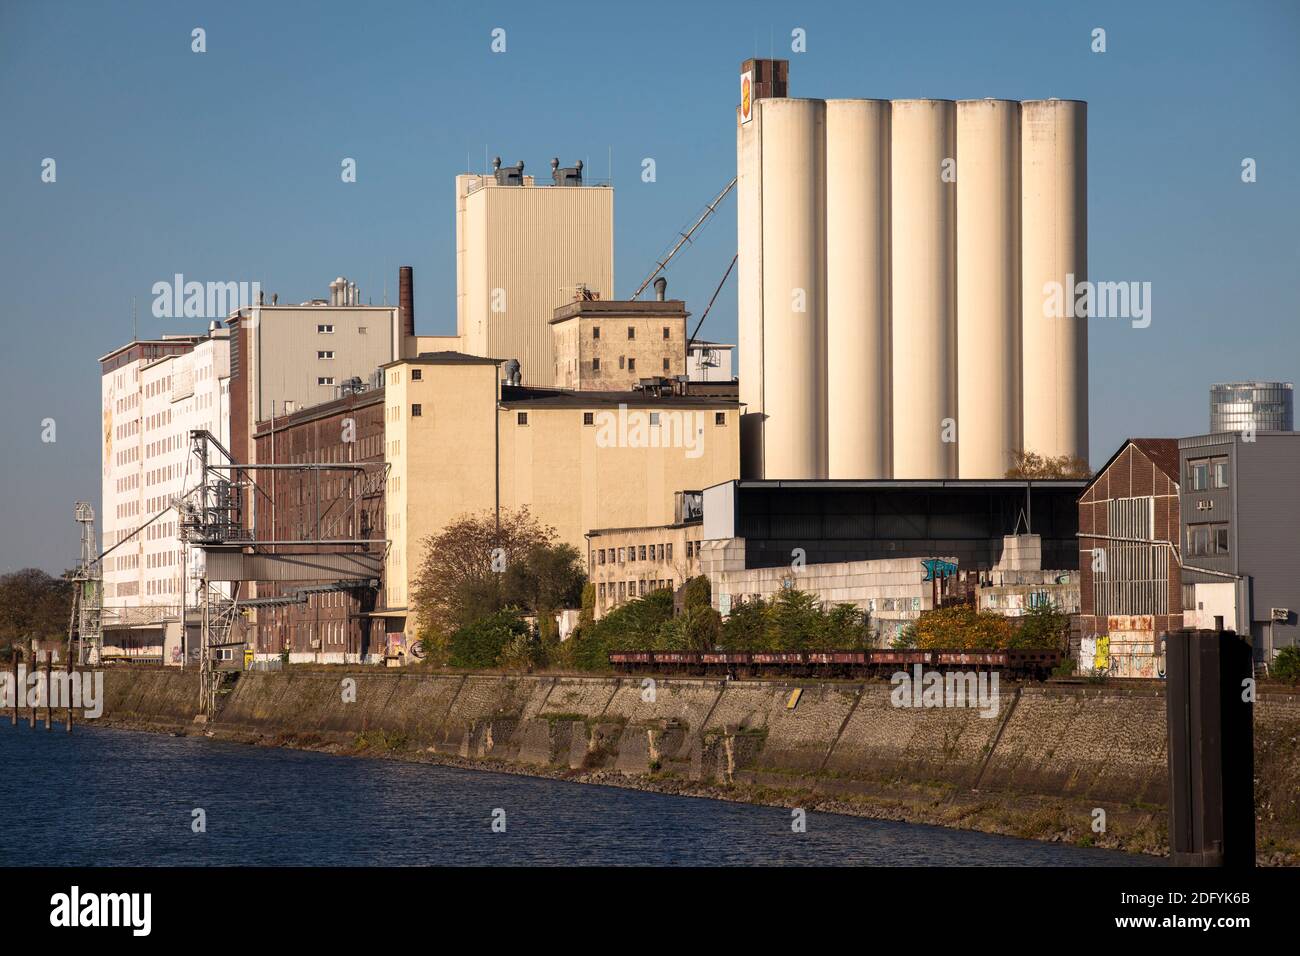 L'usine d'Ellmill ou d'Aurora dans le port du Rhin dans le district de Deutz, Cologne, Allemagne. Banque D'Images